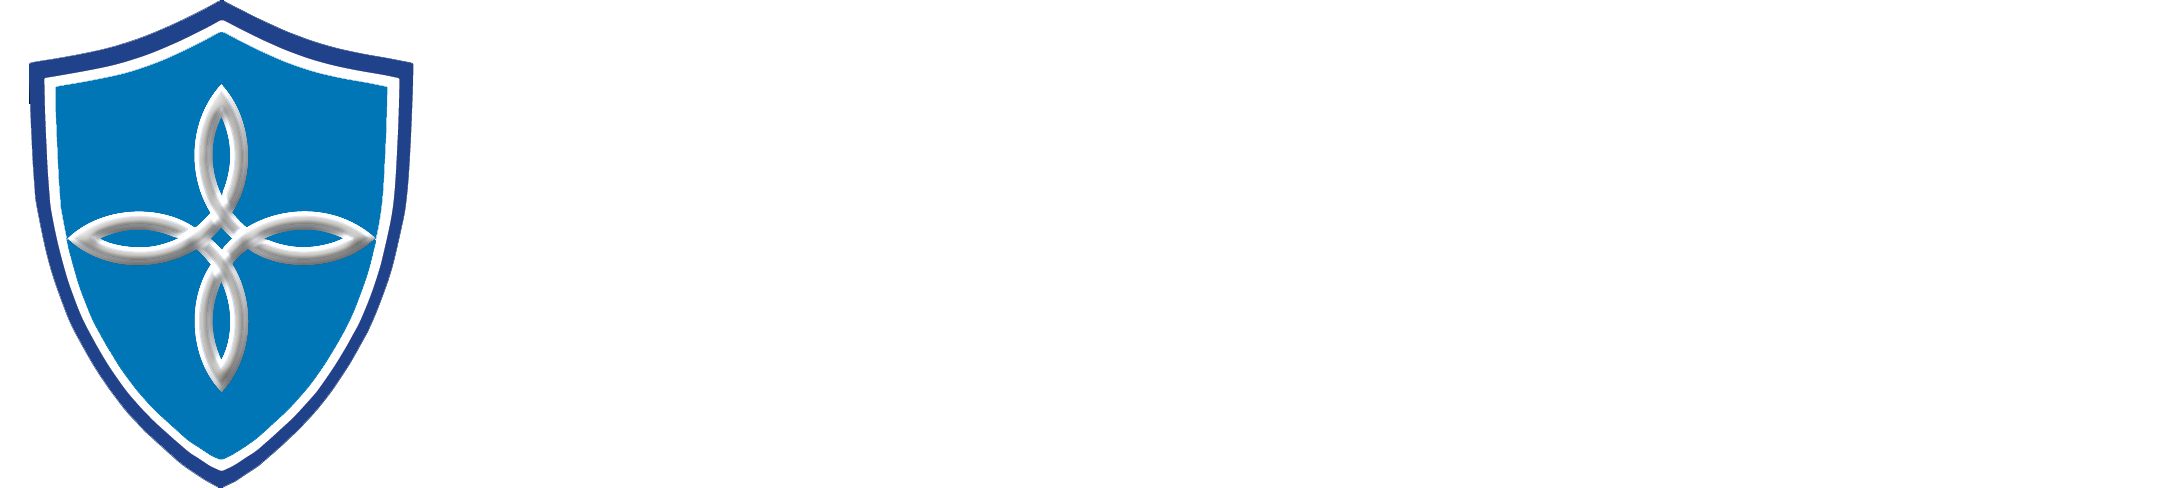 Invictus Fiduciary Services LLC